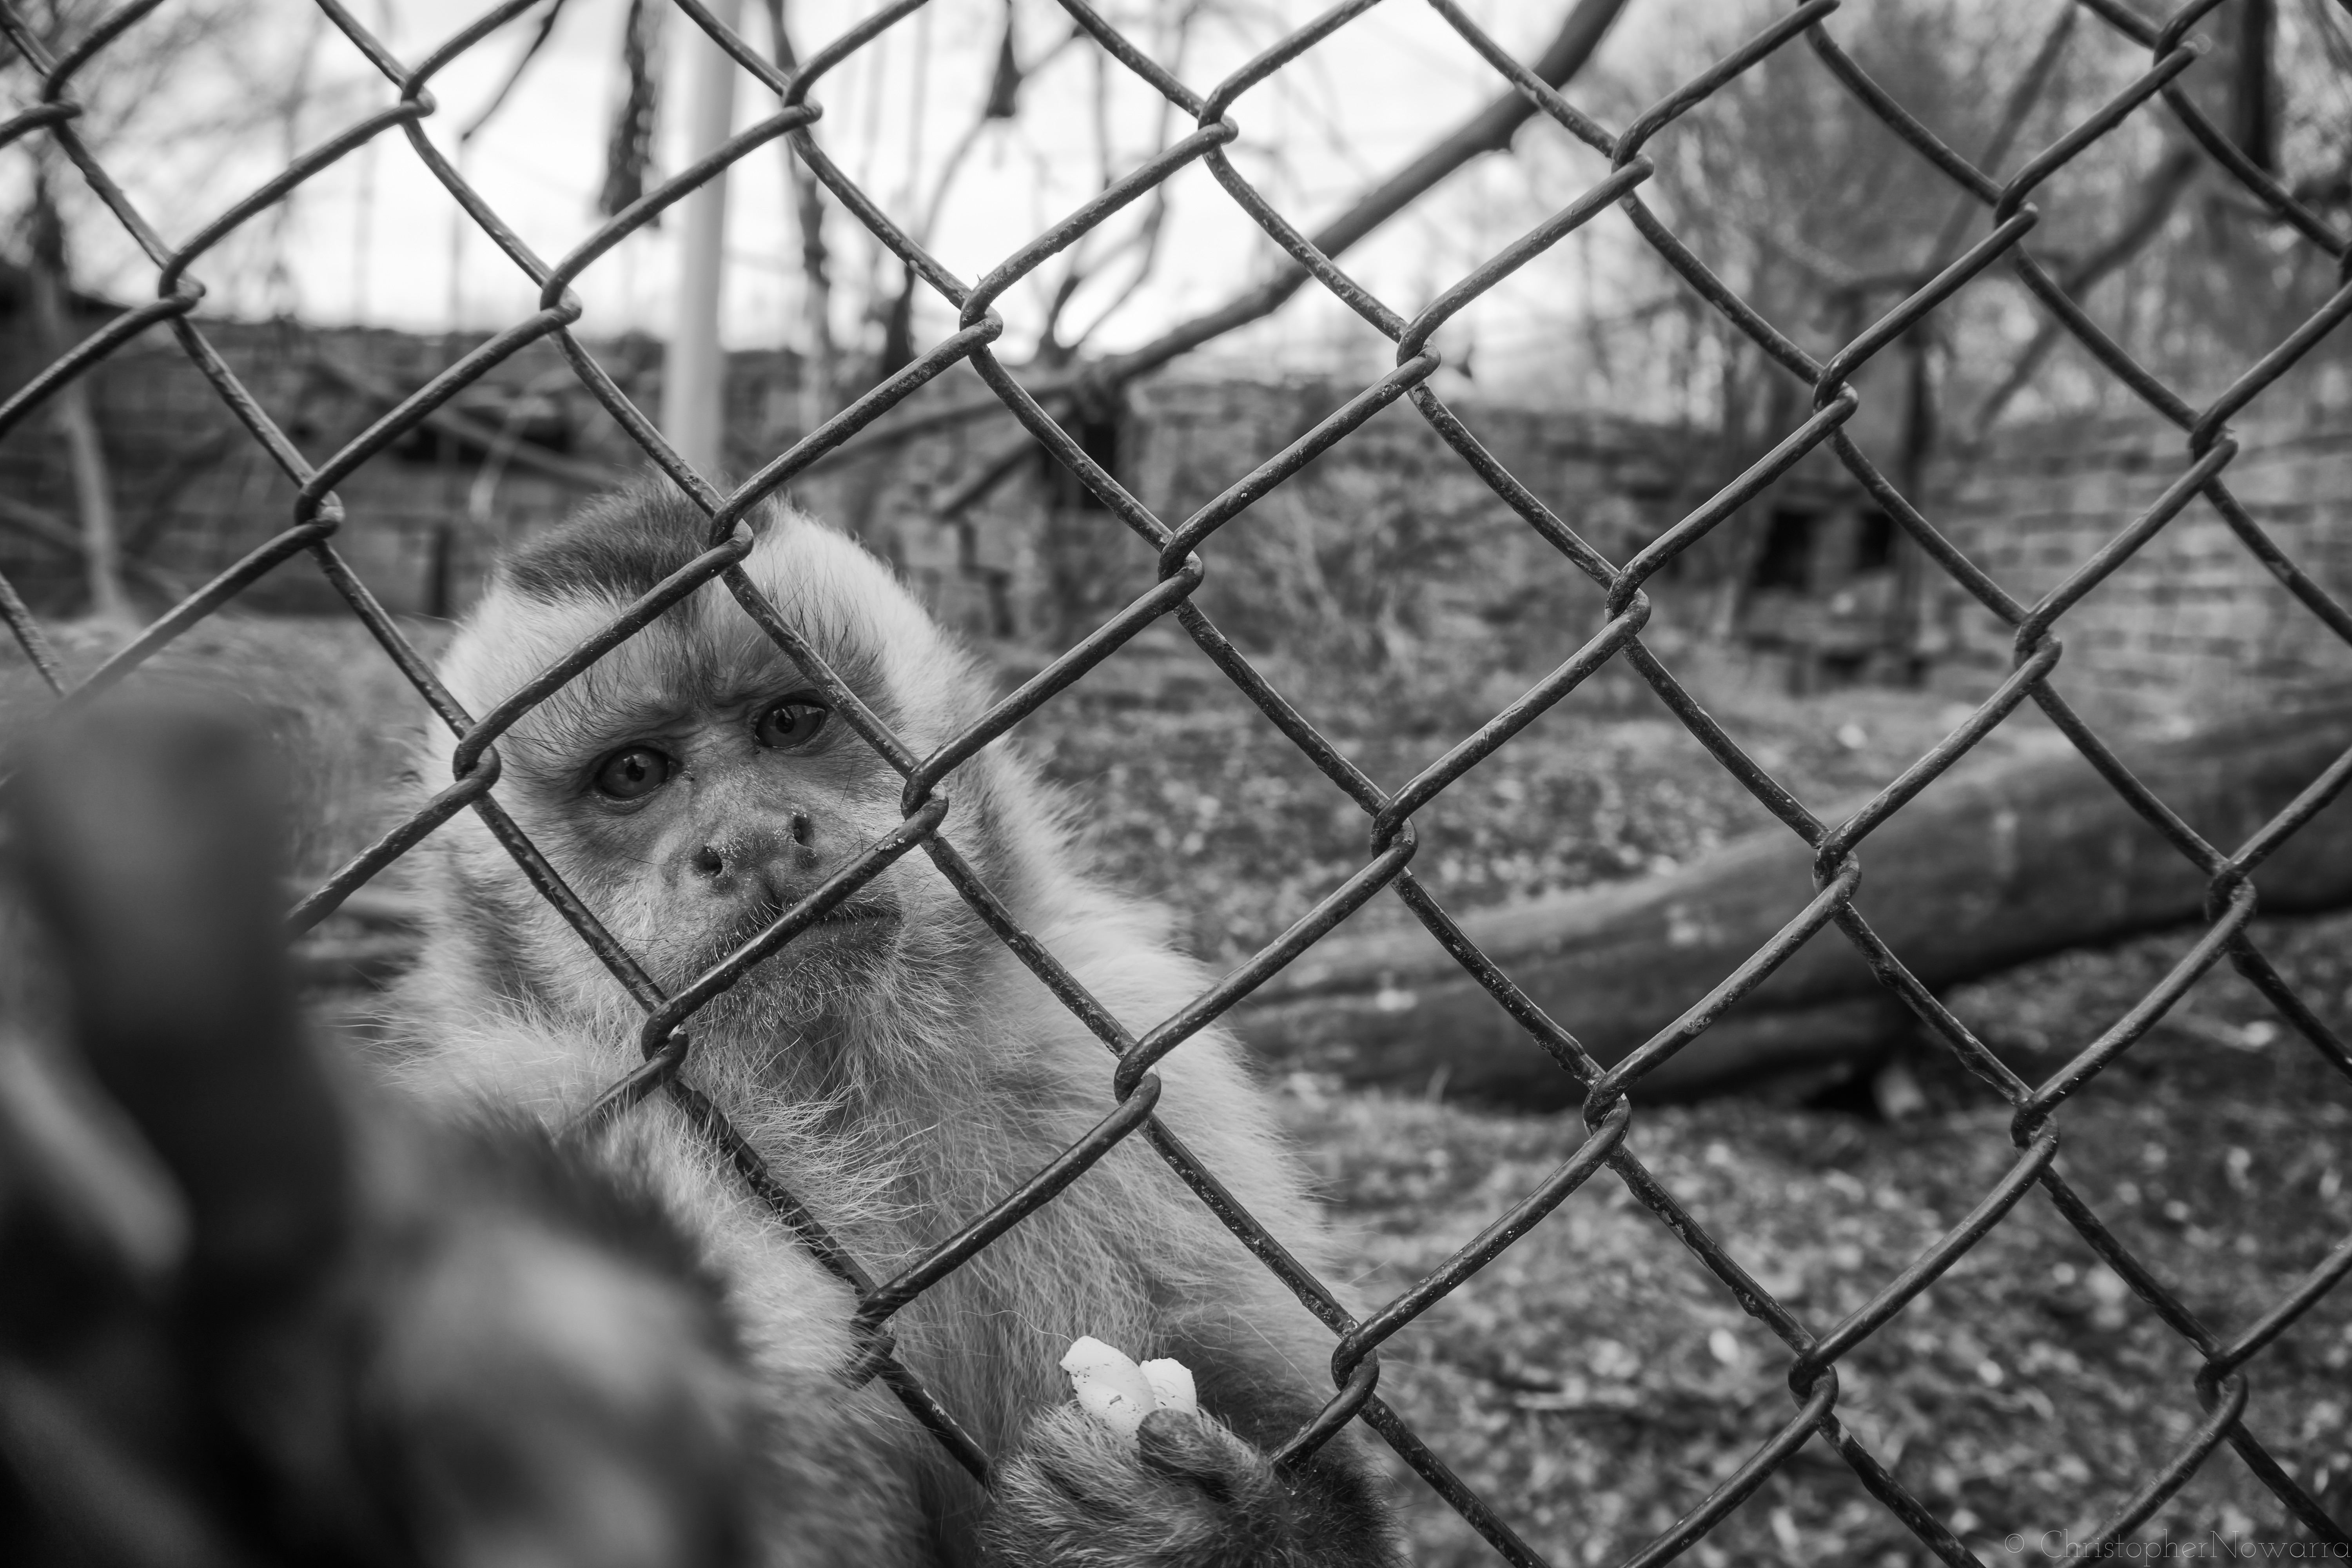 greyscale photography of monkey